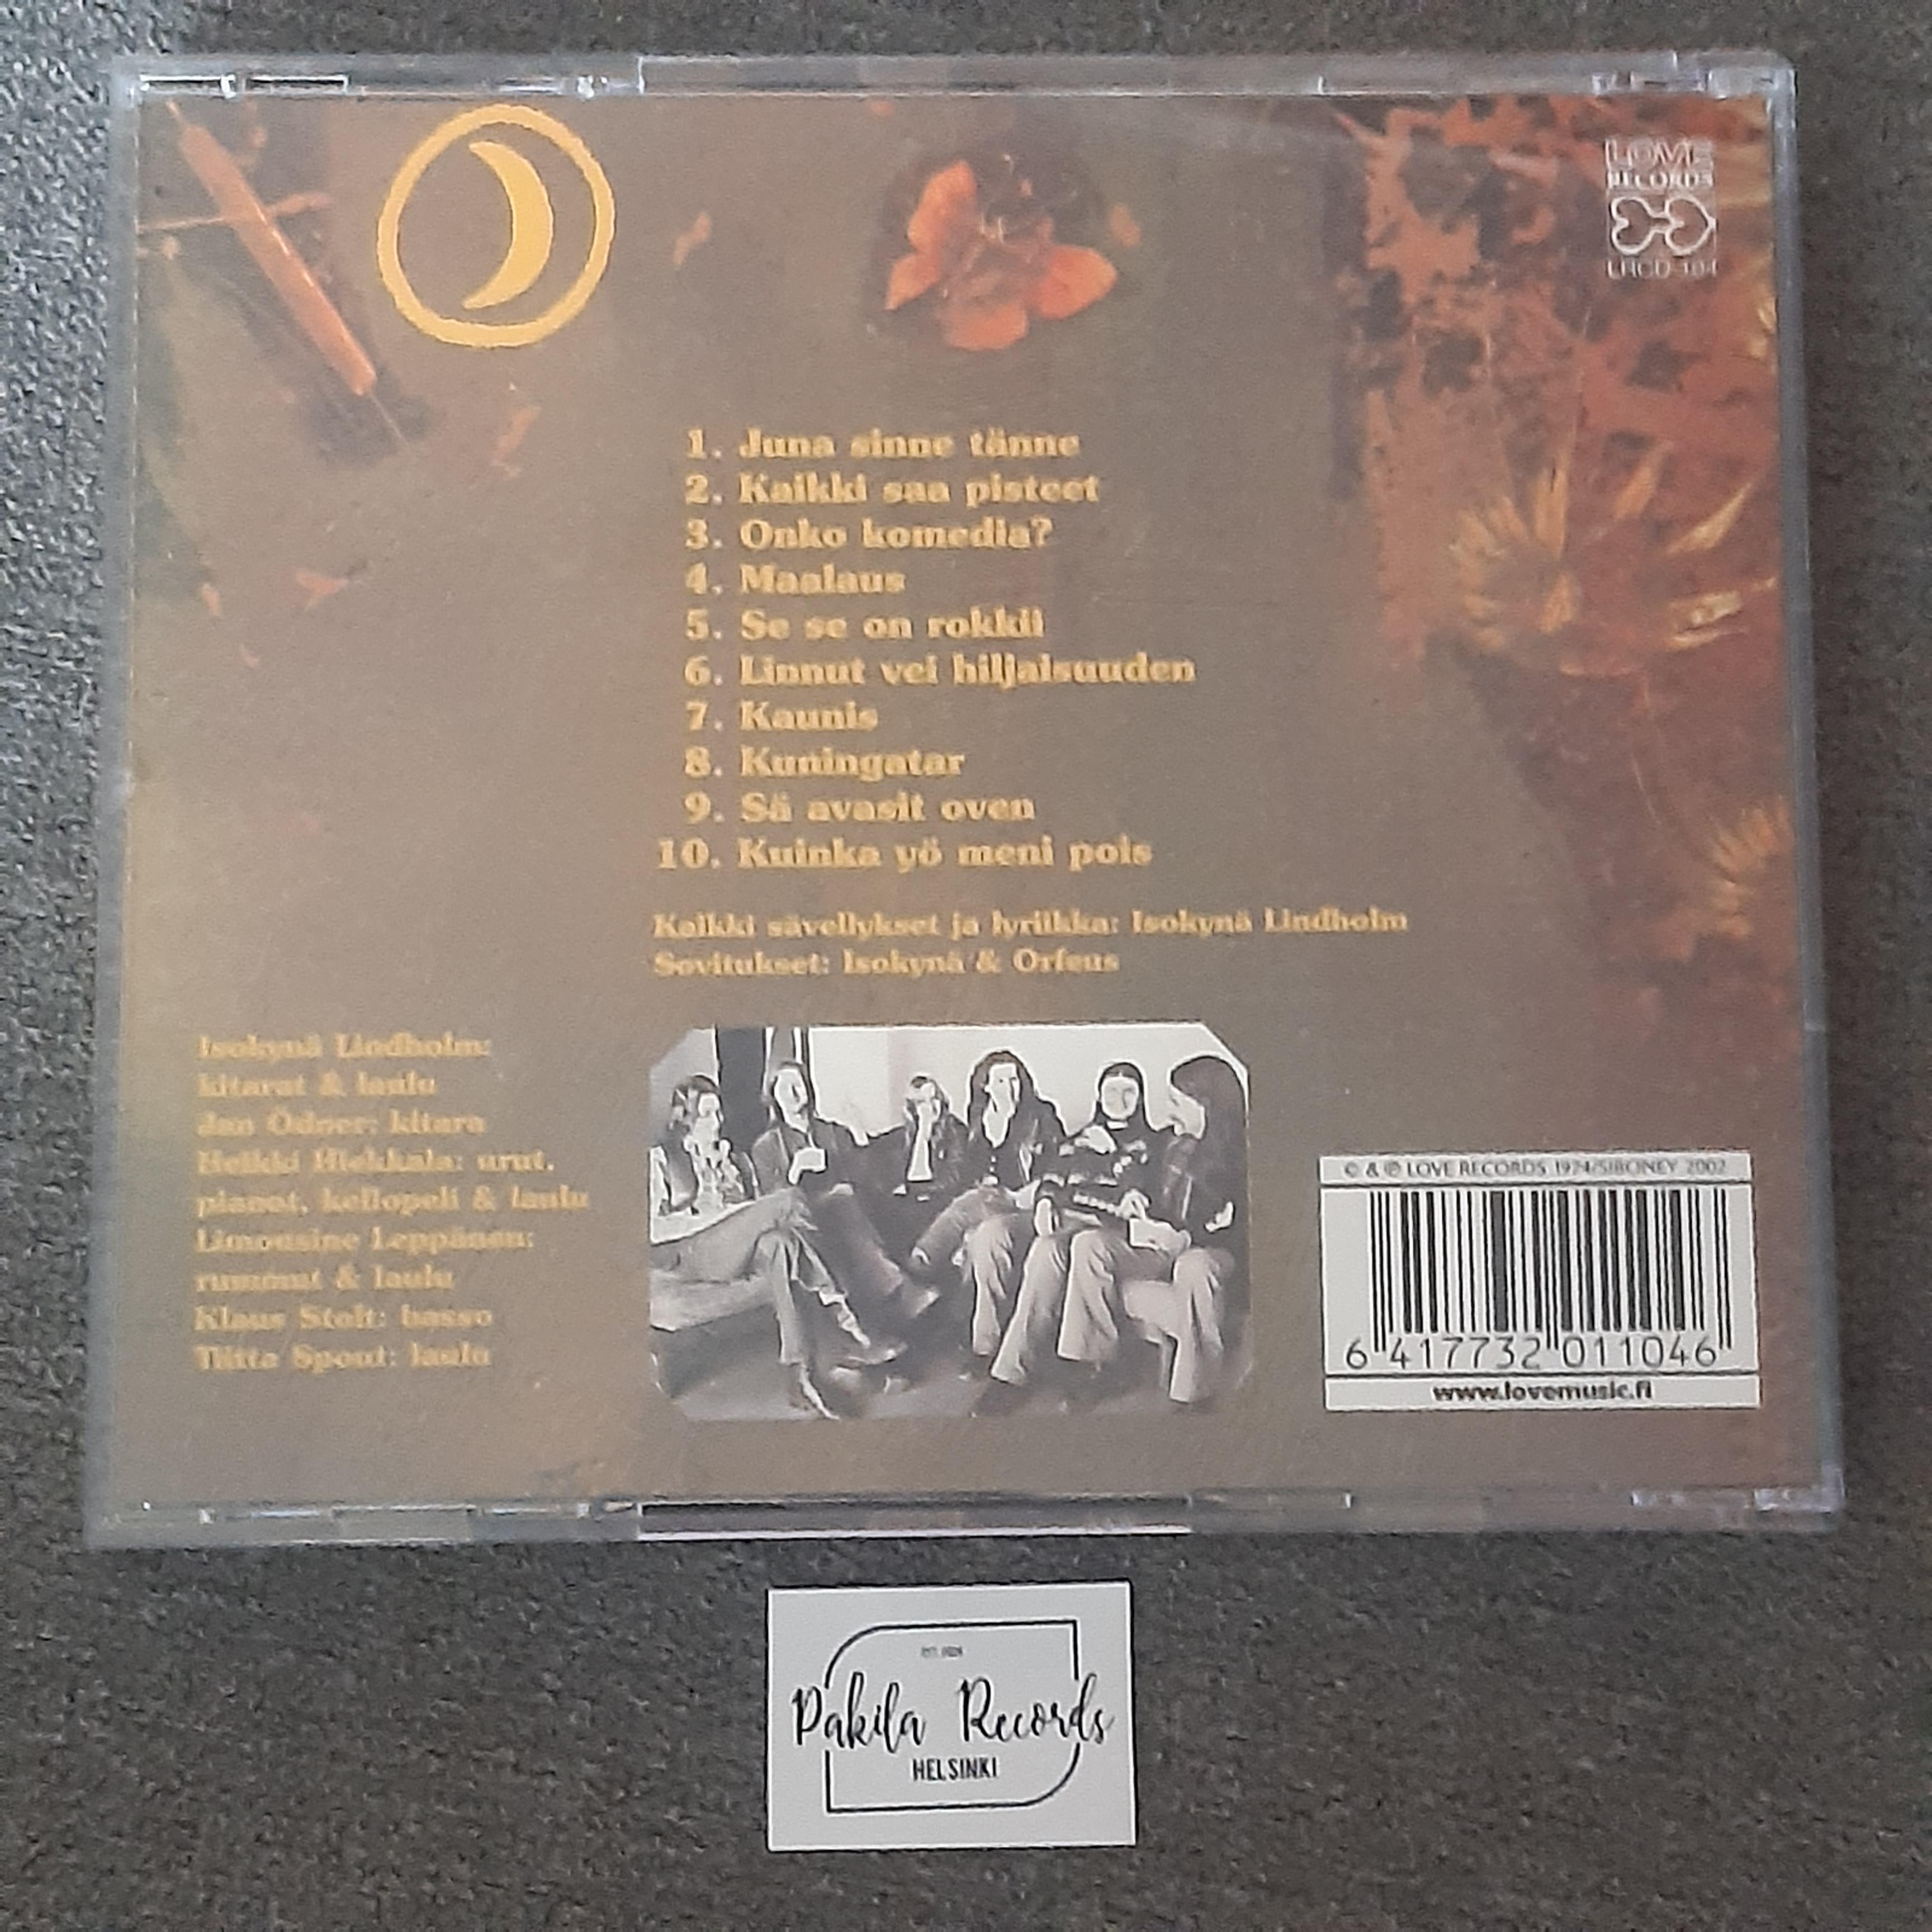 Isokynä & Orfeus - Musiikkia - CD (käytetty)